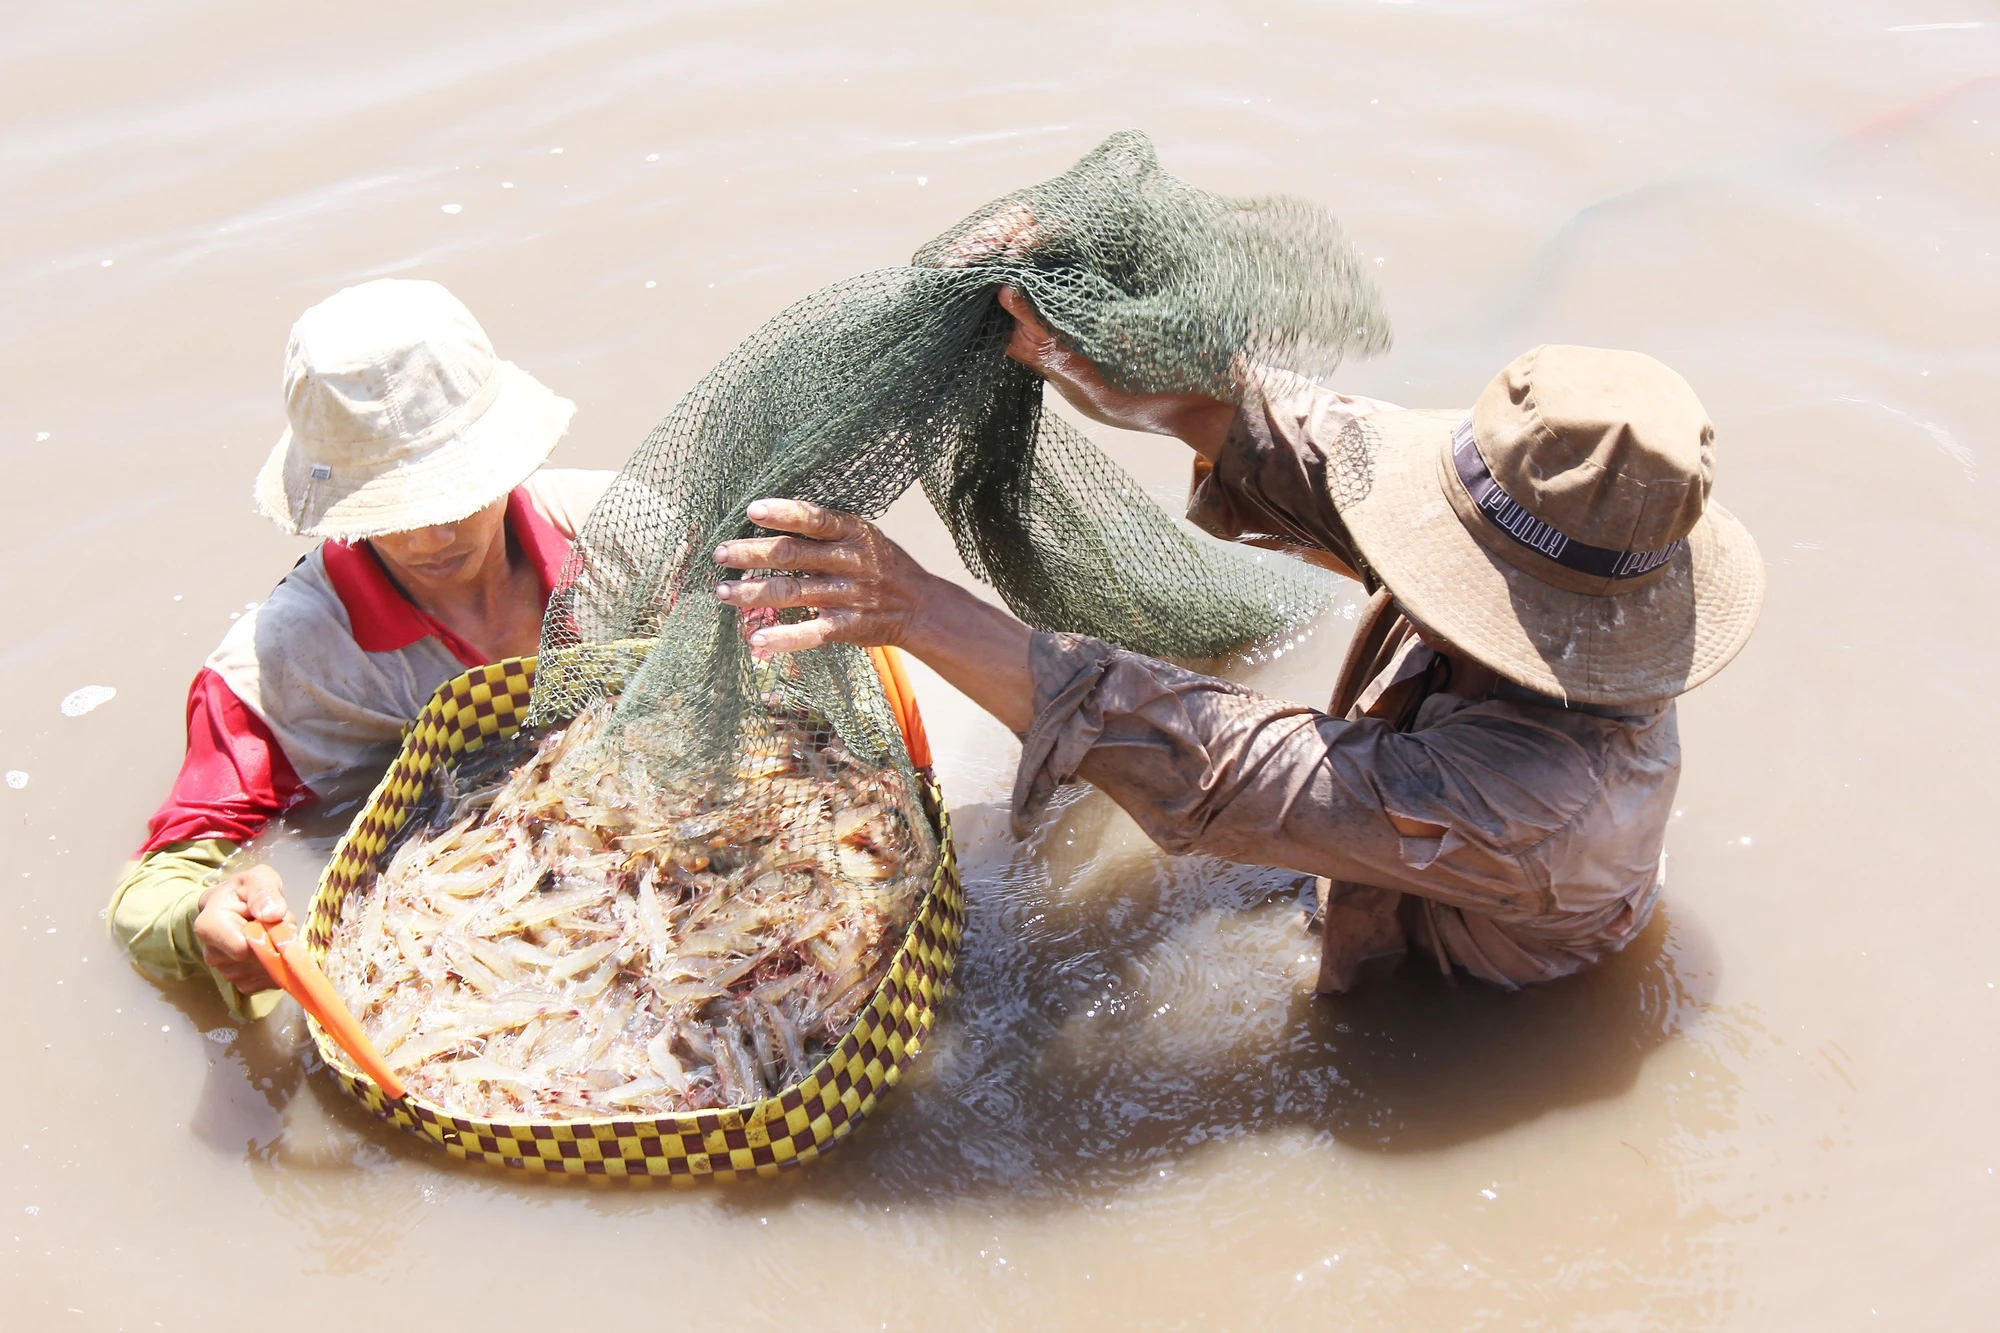 “Nông dân tỷ phú” hỗ trợ nông dân nghèo hơn 3 tỷ đồng - Ảnh 2.